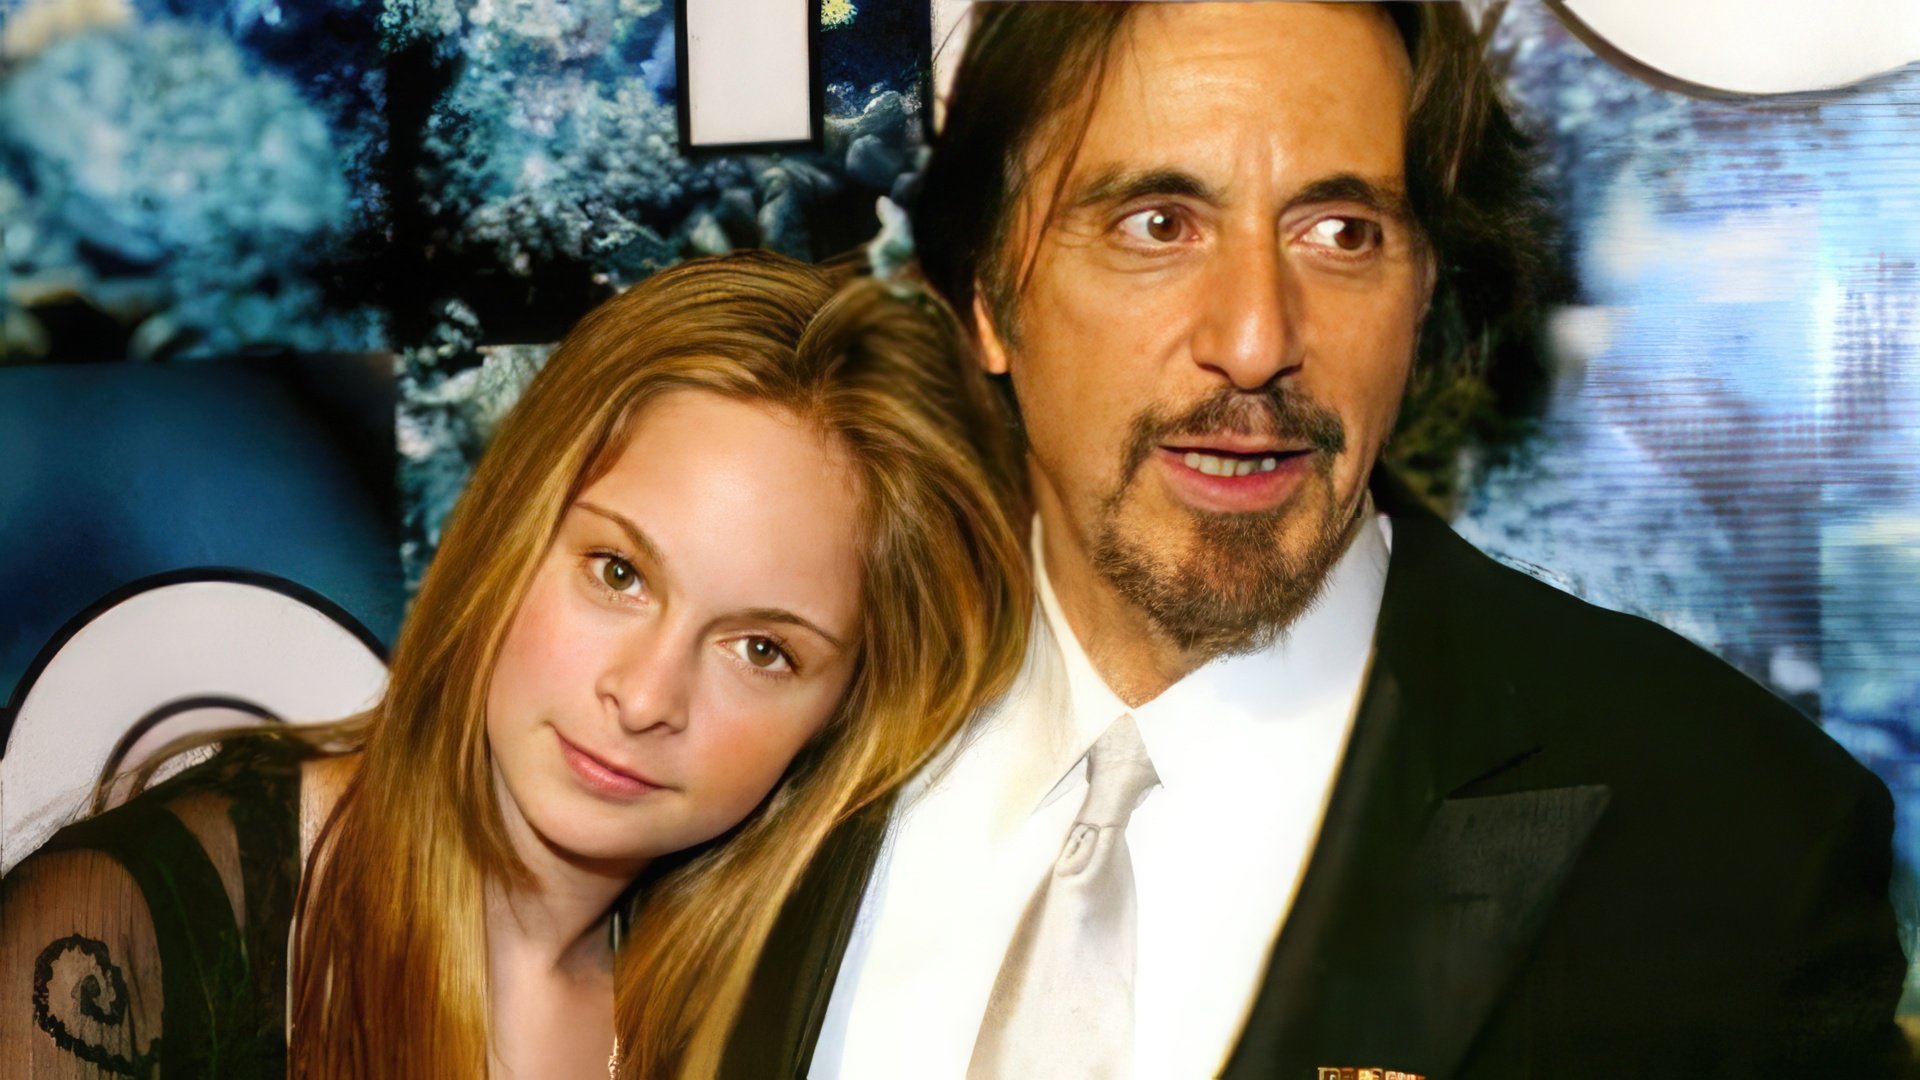 Al Pacino’s elder daughter